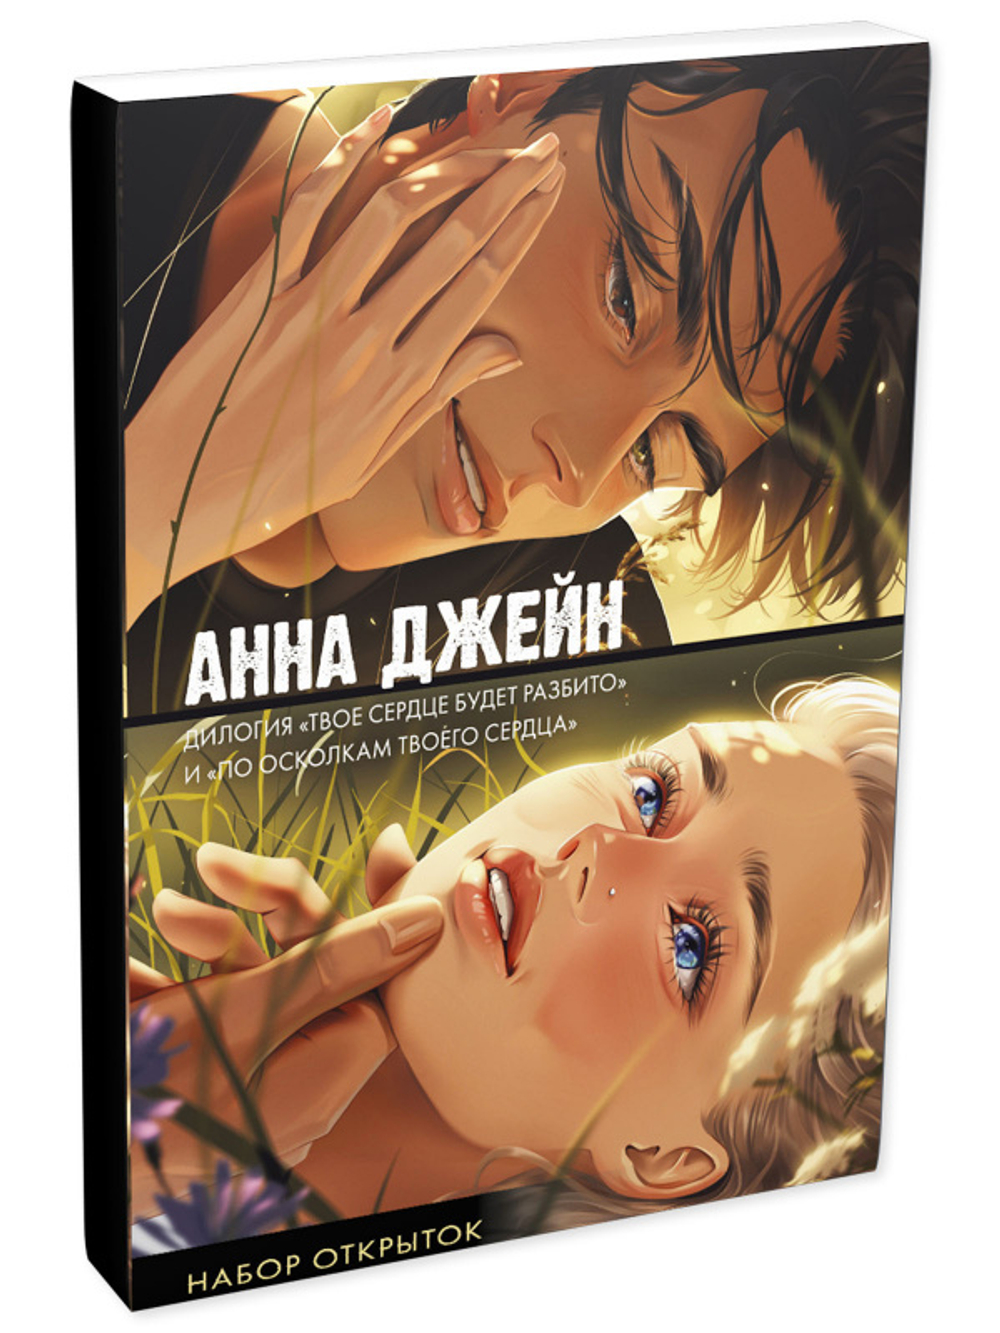 Набор открыток по романам "Твое сердце будет разбито" и "По осколкам твоего сердца" Анны Джейн (мерч)